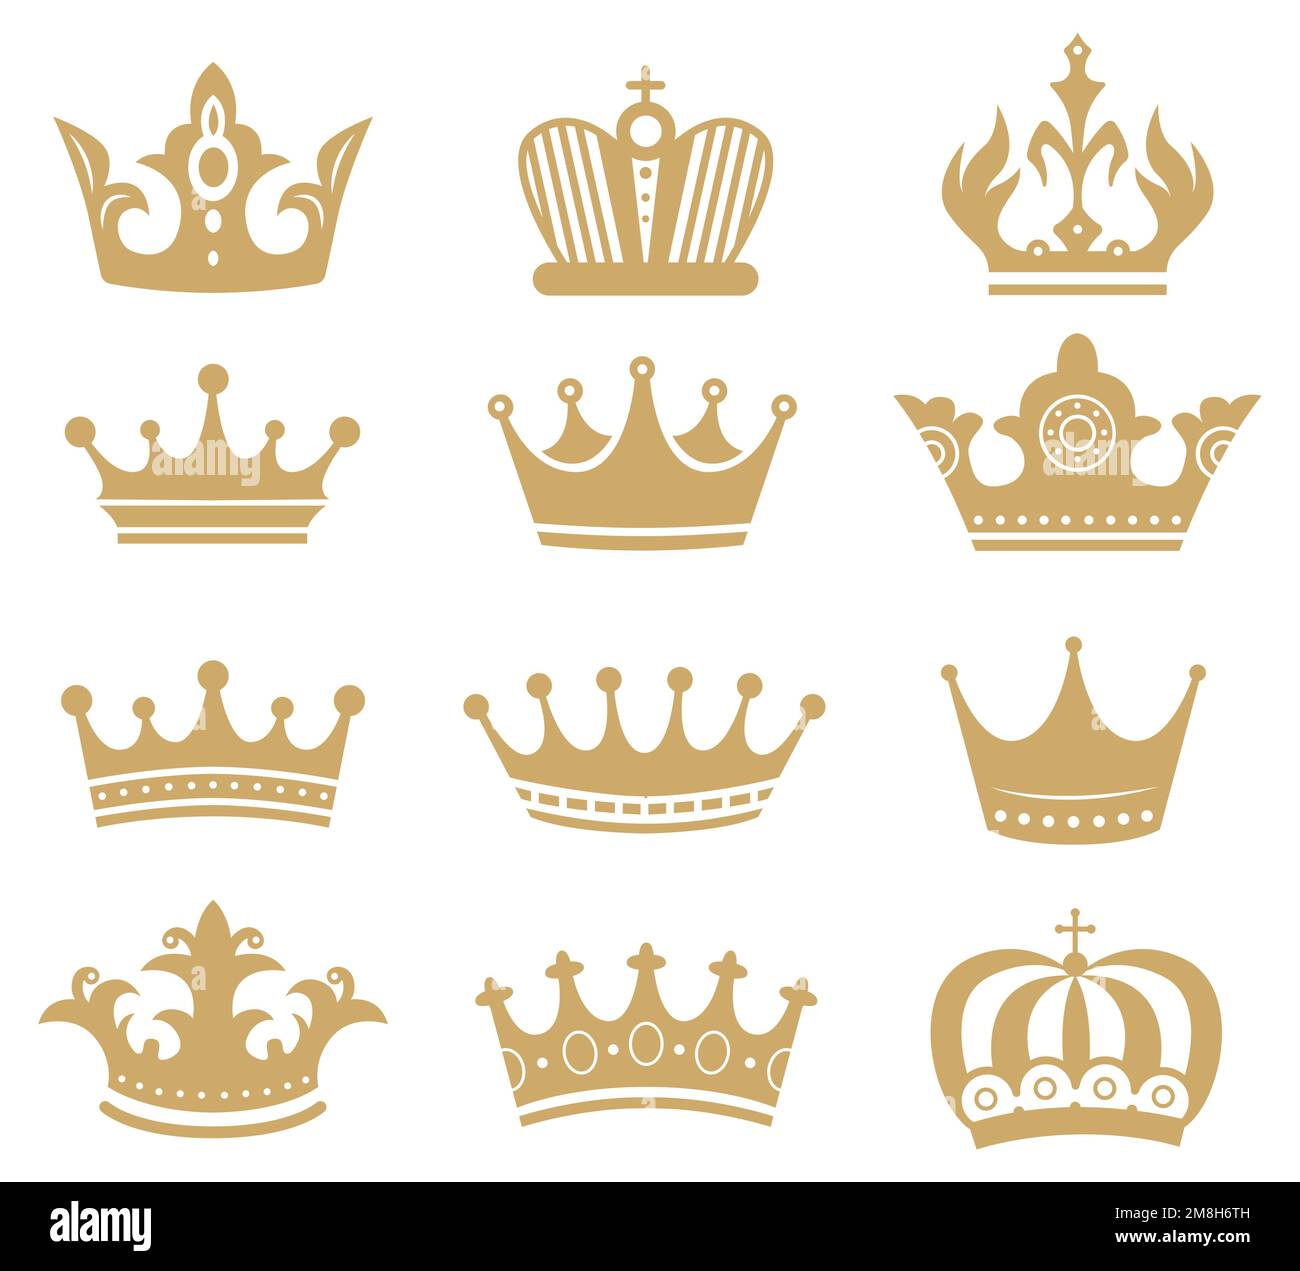 Goldene Kronensilhouette. Königliche King- und Queen-Elemente isoliert auf Weiß. Monarch-Schmuck, Diadem oder Diadem für die Prinzessin Stock Vektor